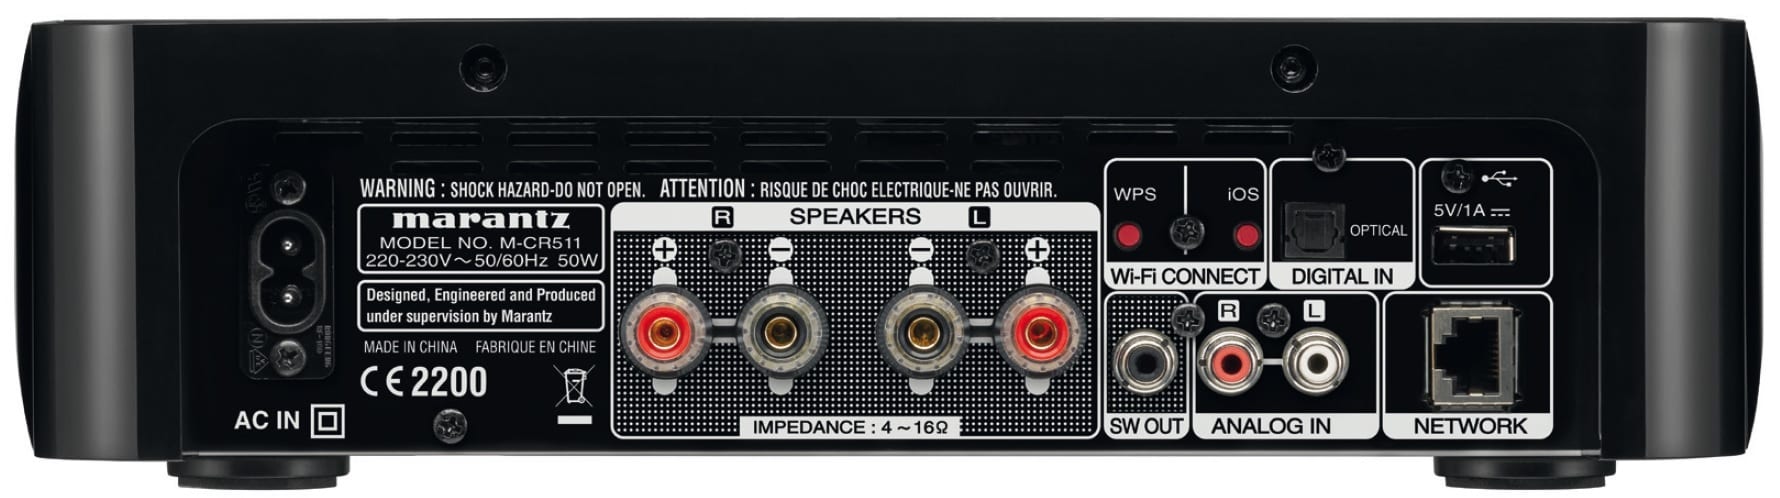 Marantz M-CR511 zwart - achterkant - Stereo receiver